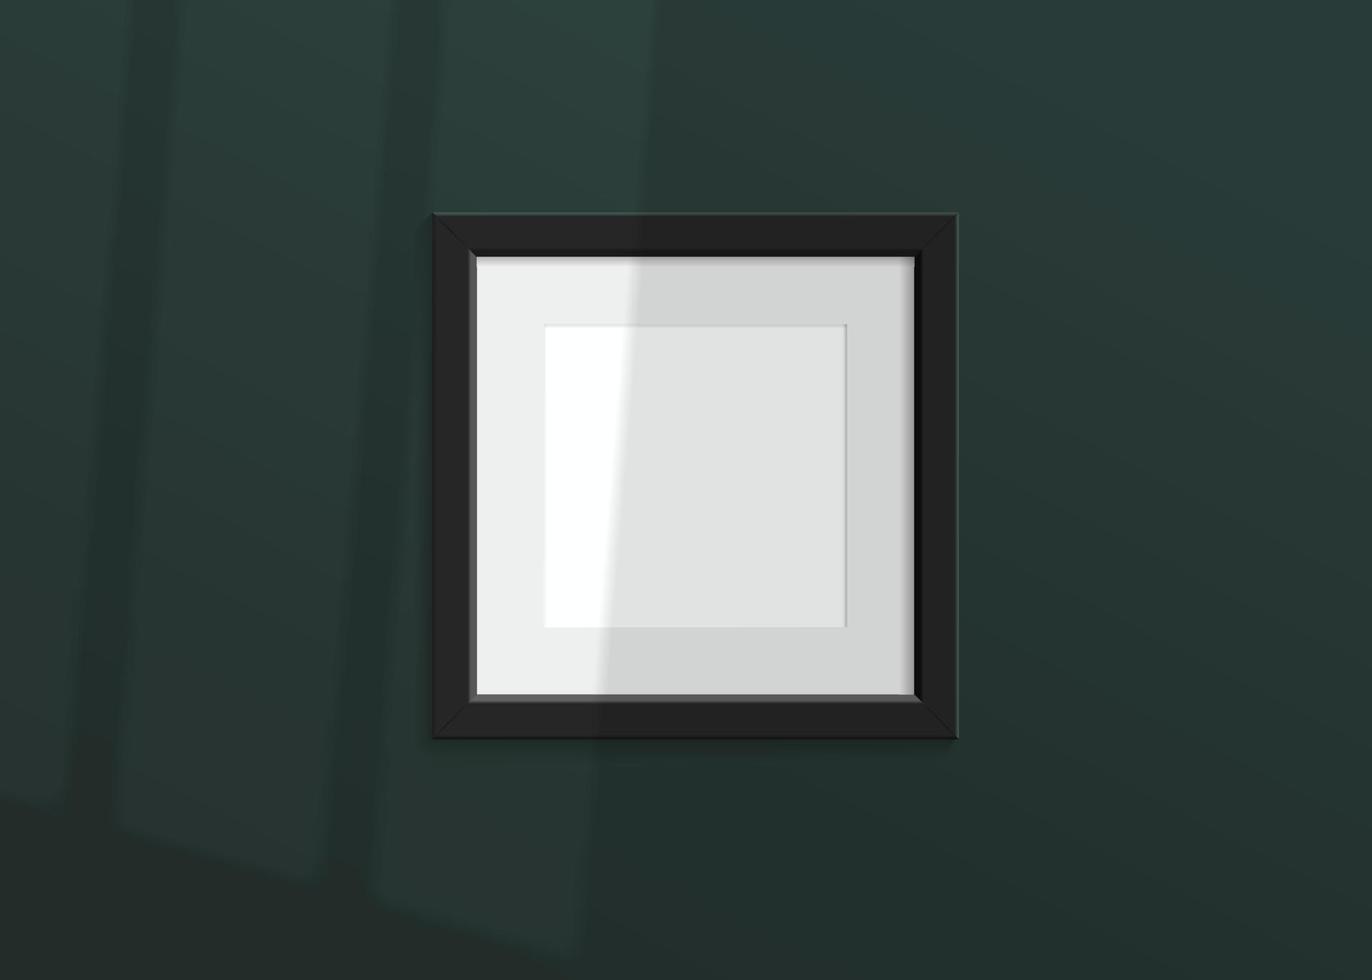 realistisches vektorluxusmodell mit schwarzem fotorahmen. Schatten an der grünen Wand und leerer Platz für Ihr Design. 3D weiches Licht und Overlay-Schatten vom Fenster. quadratisches Poster oder Gemälde. vektor